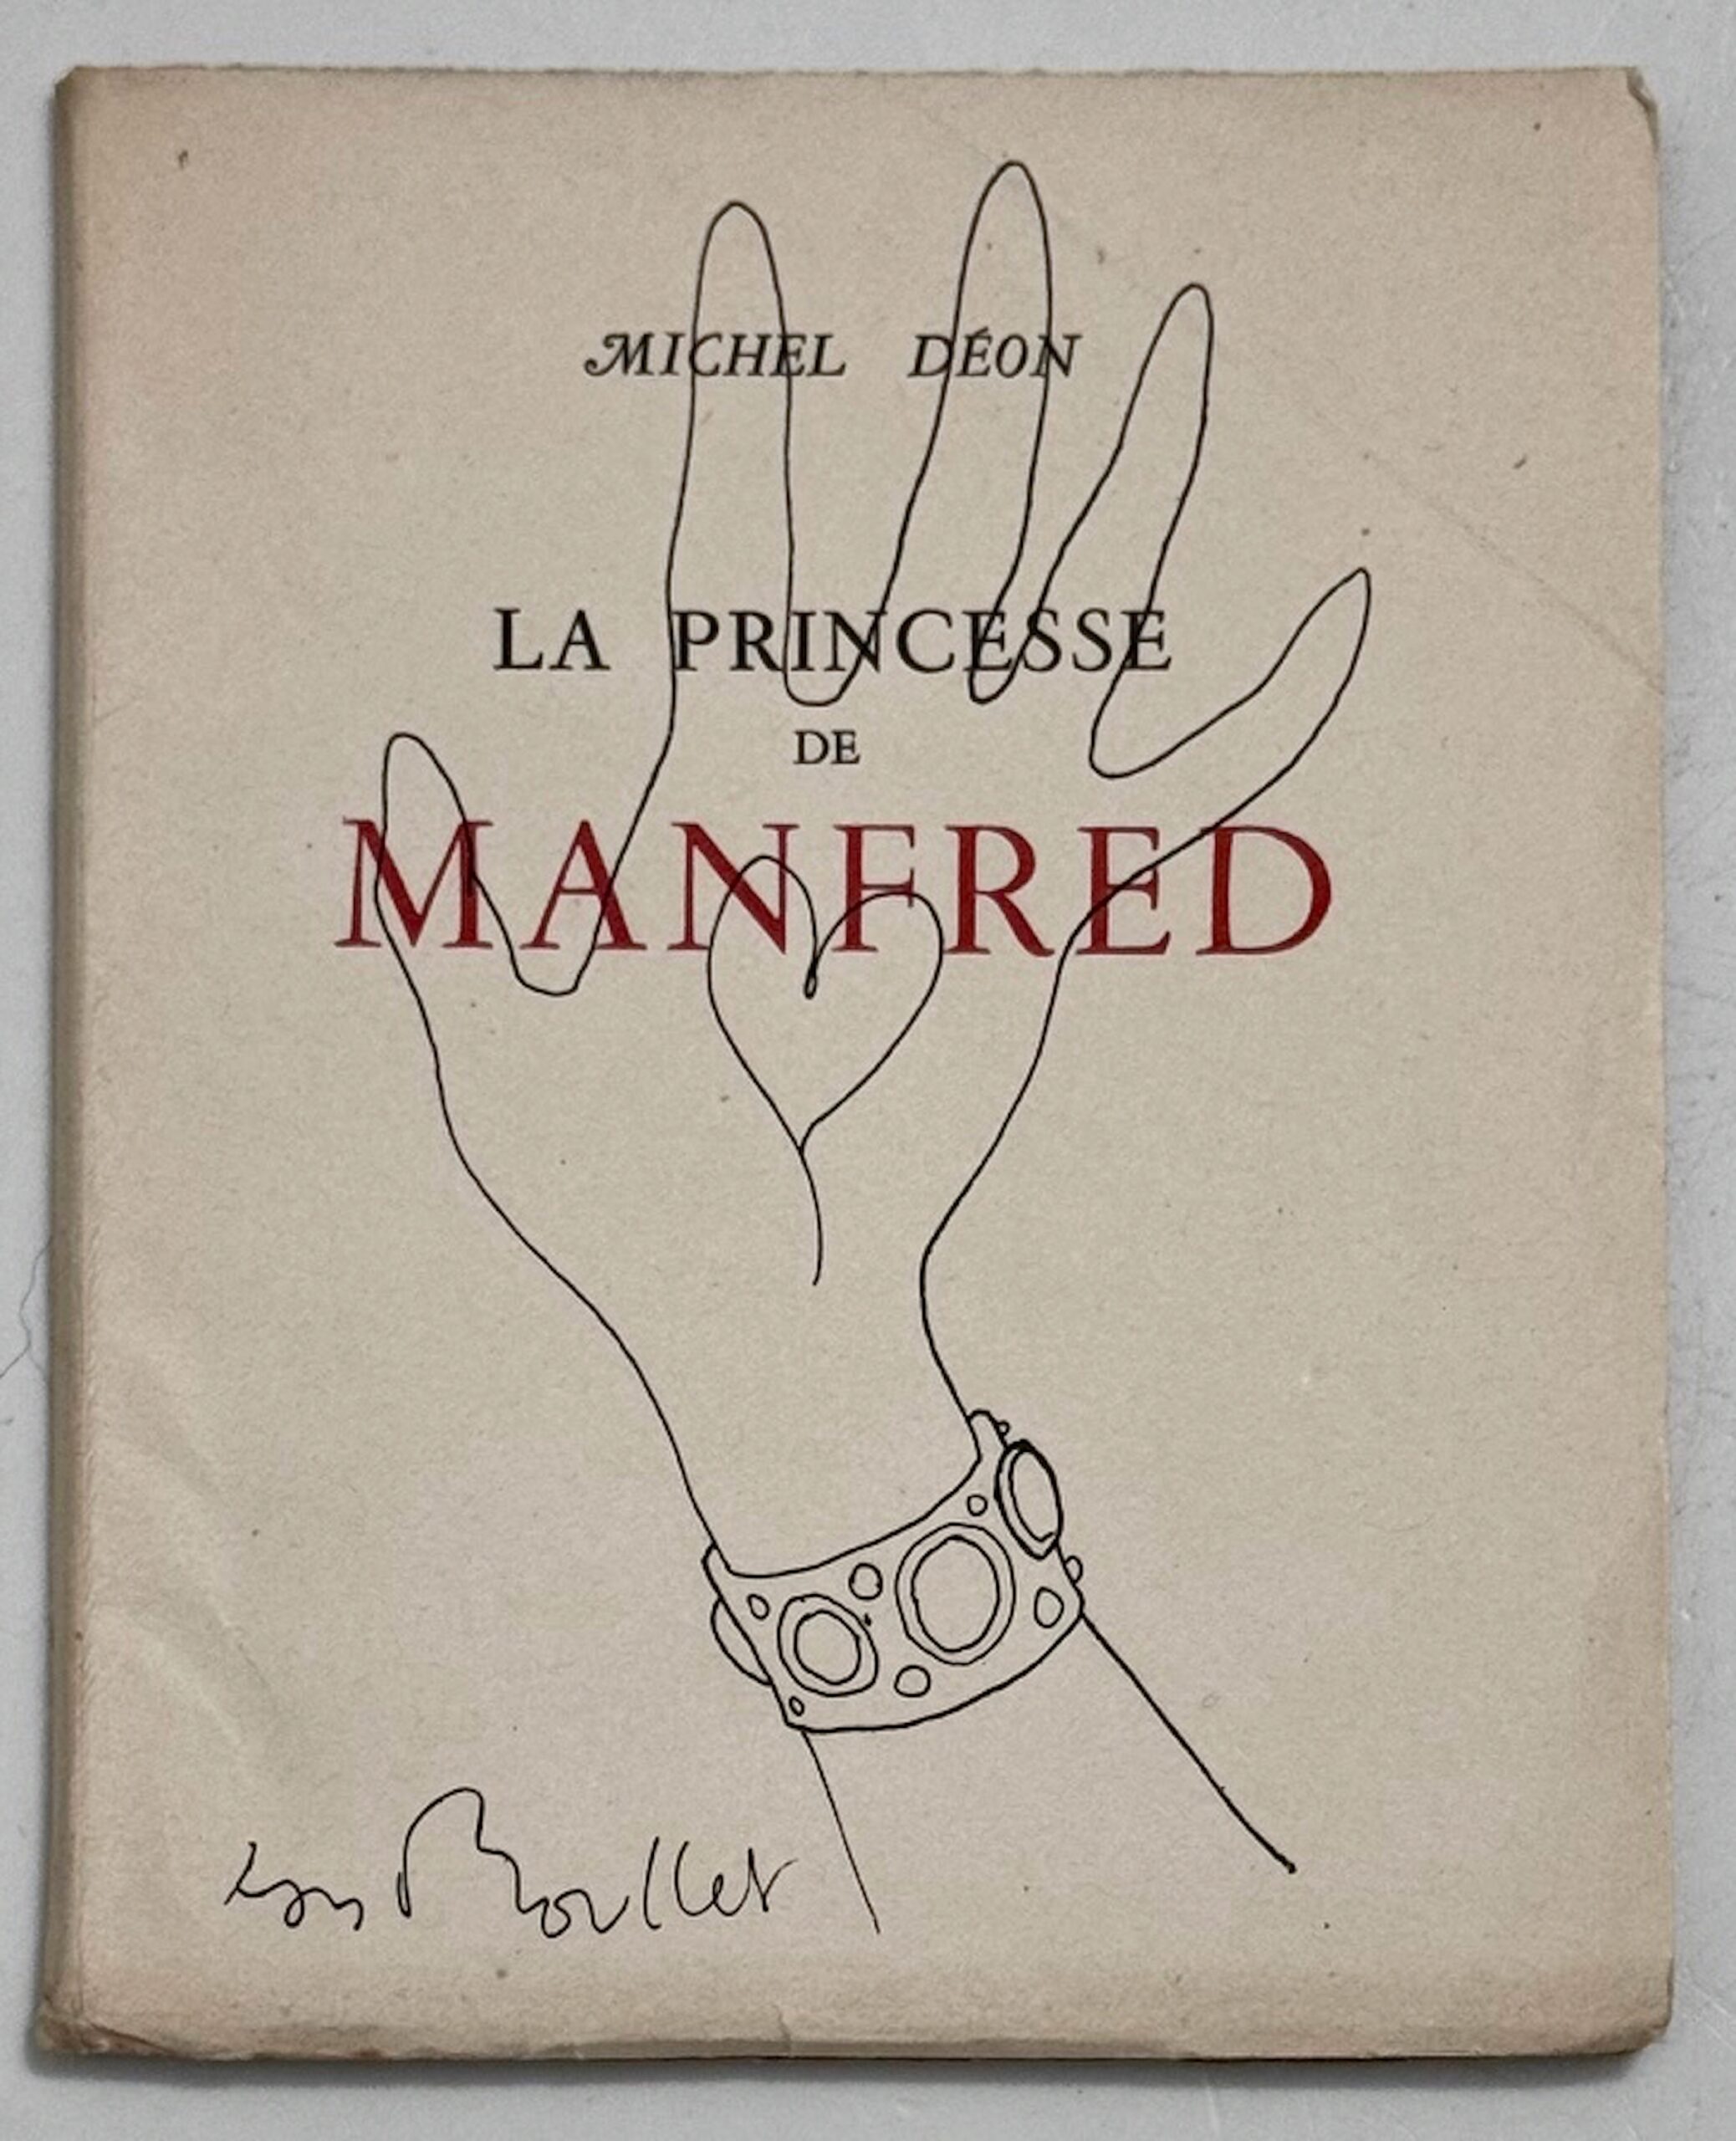 Michael Deon, La Princesse de Mandred, Jean Boullet, 1949